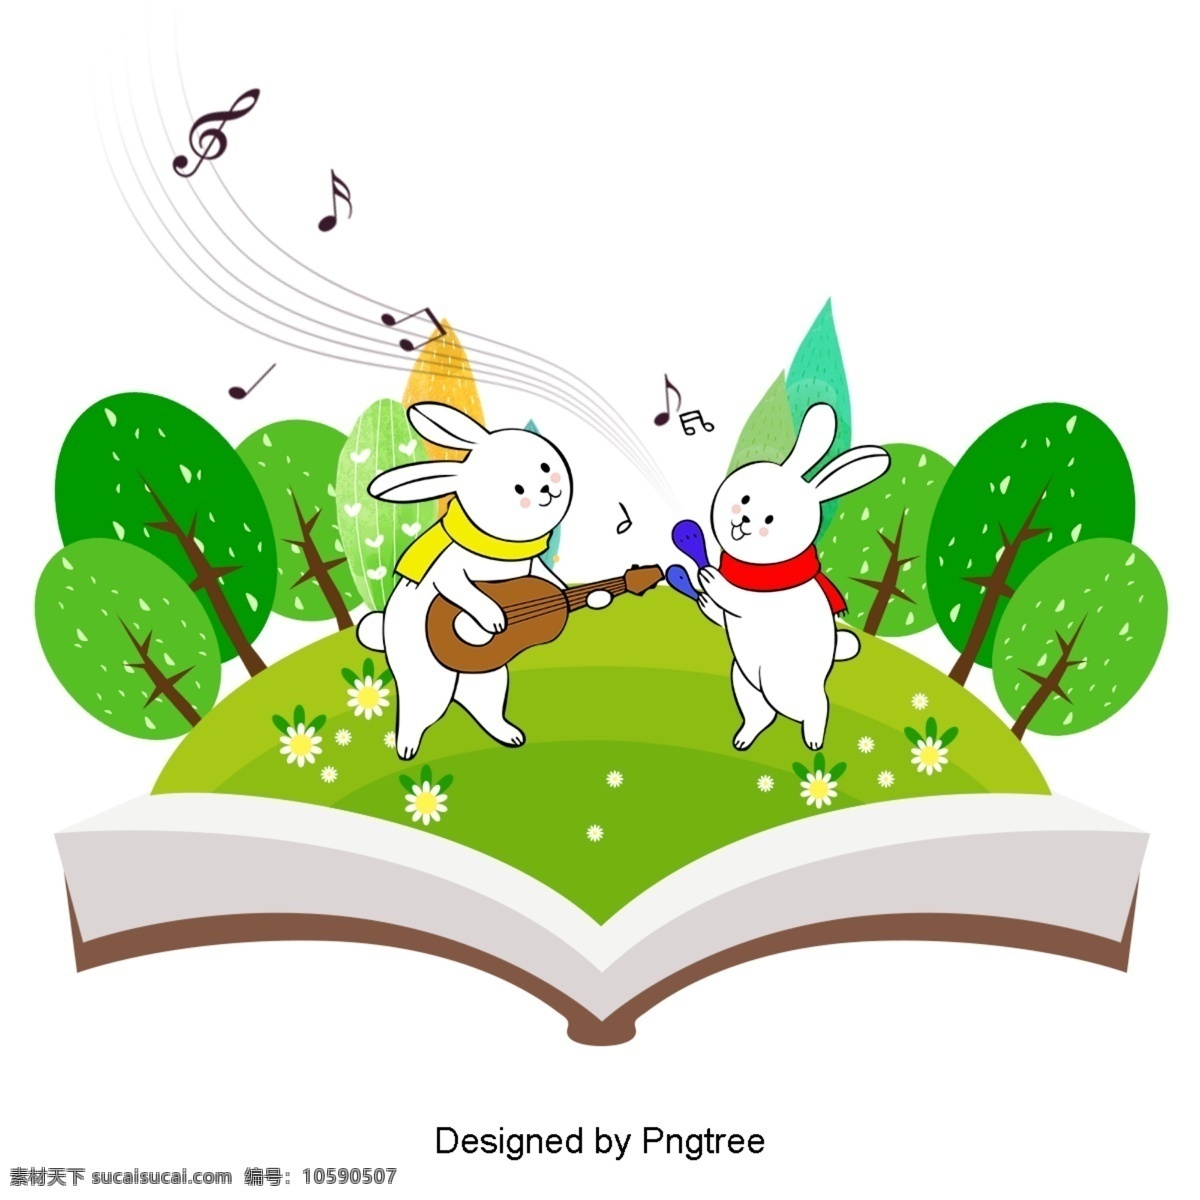 美丽 酷 卡通 可爱 手绘 世界 创意 书 漂亮 兔子 唱歌